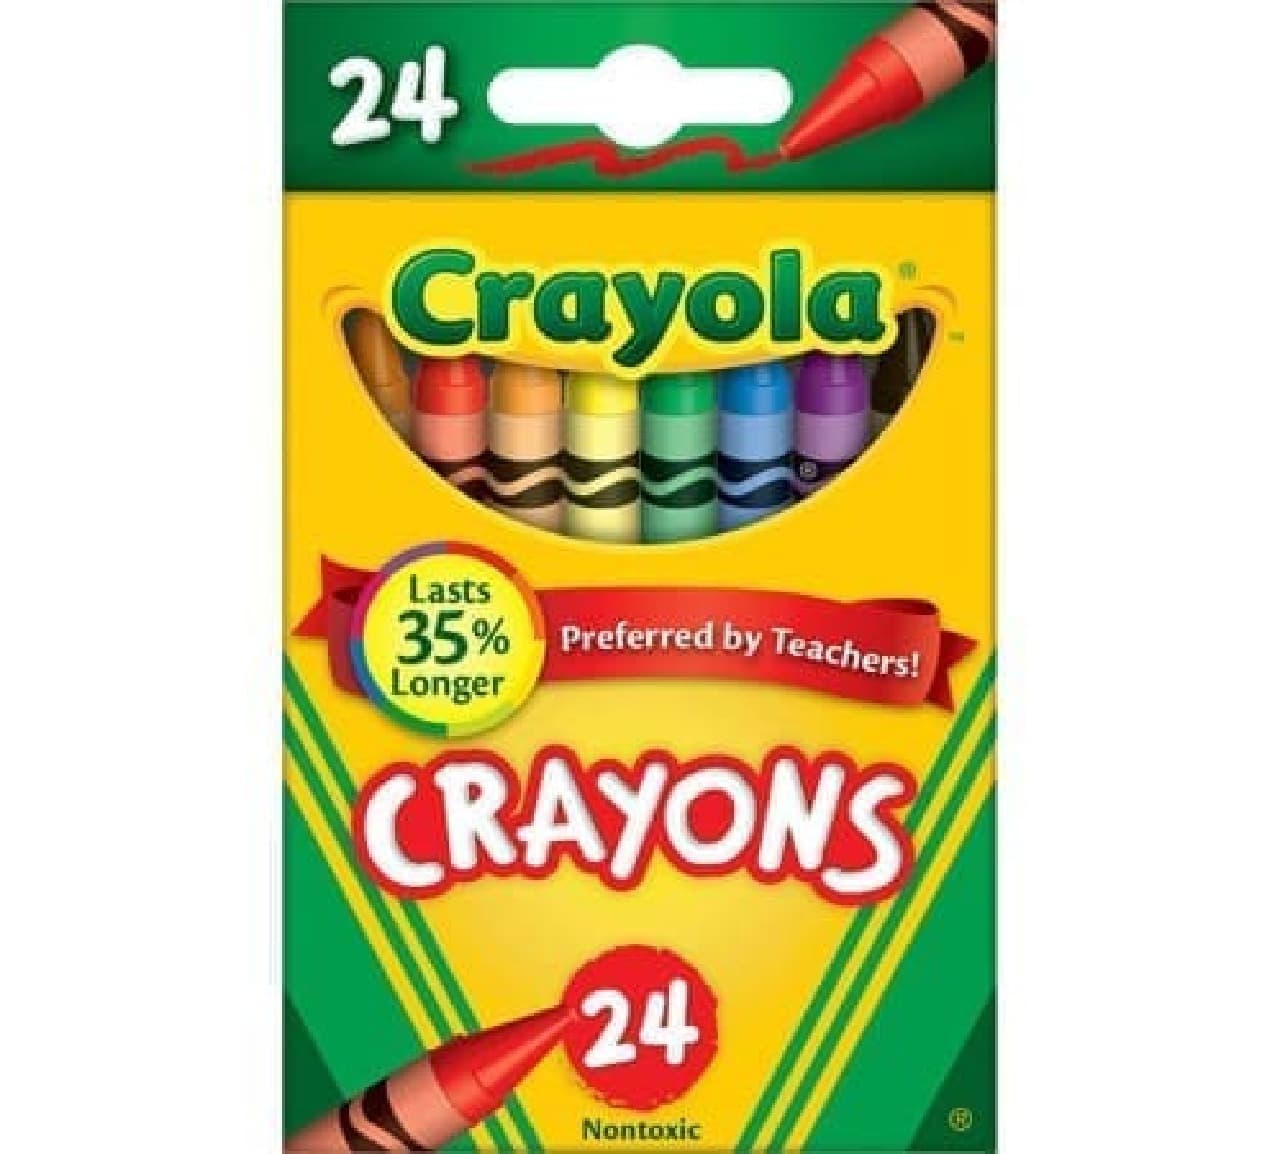 Crayon crayon